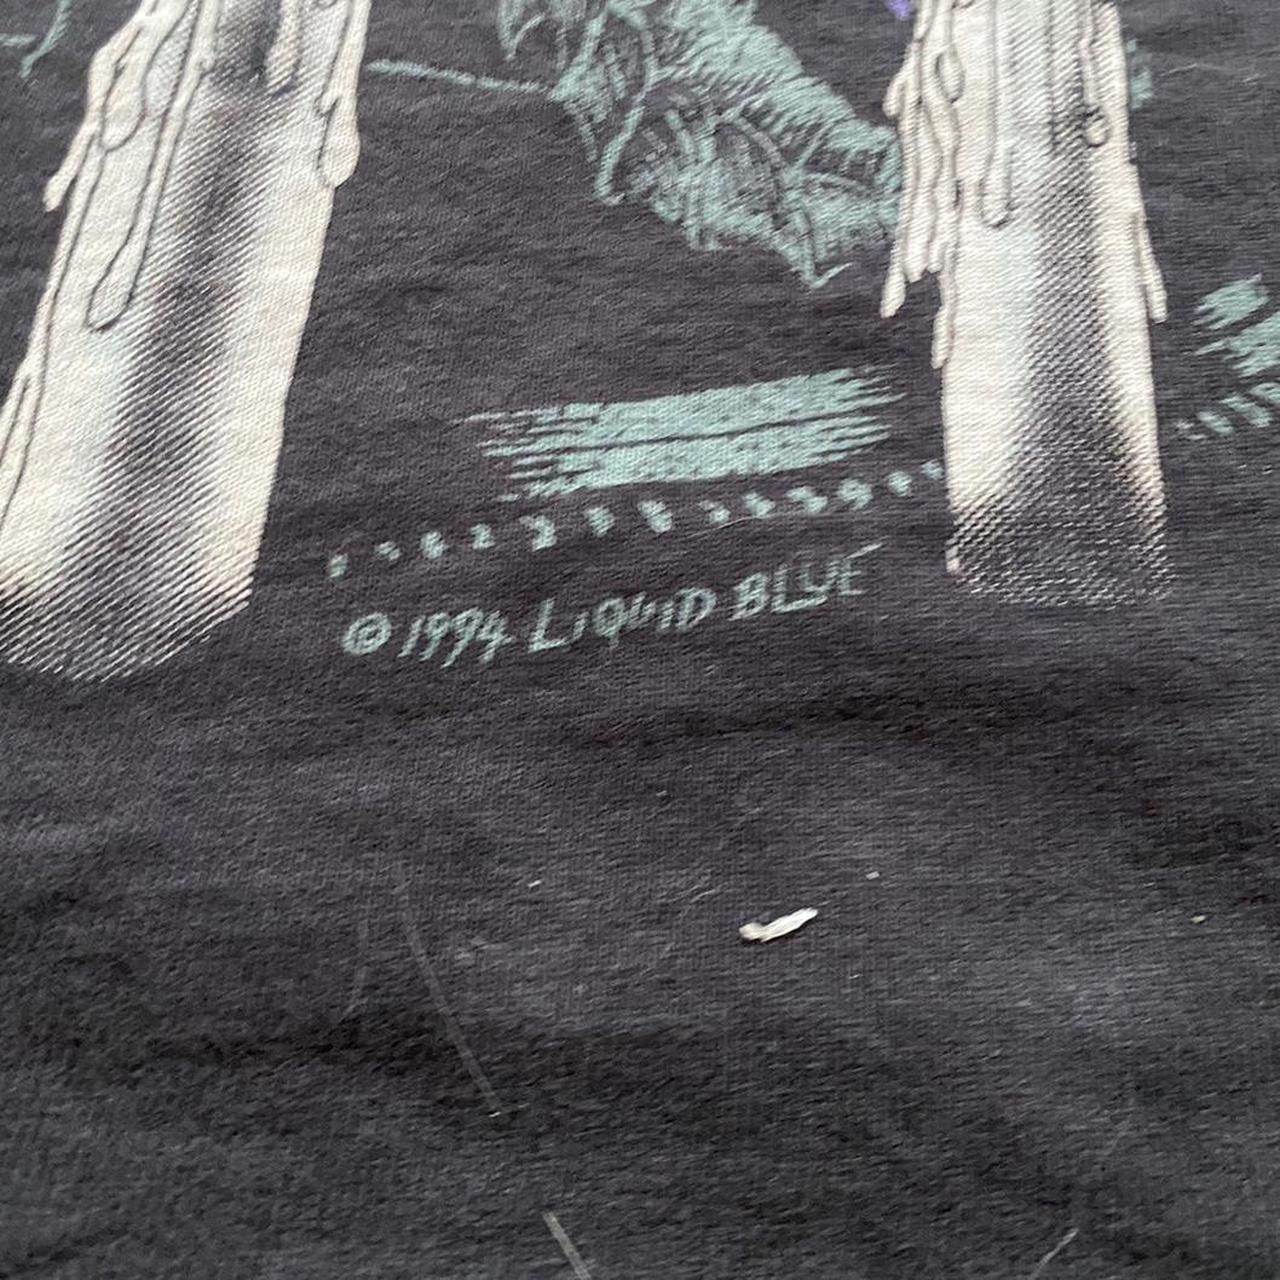 liquid blue Men's Black T-shirt (5)